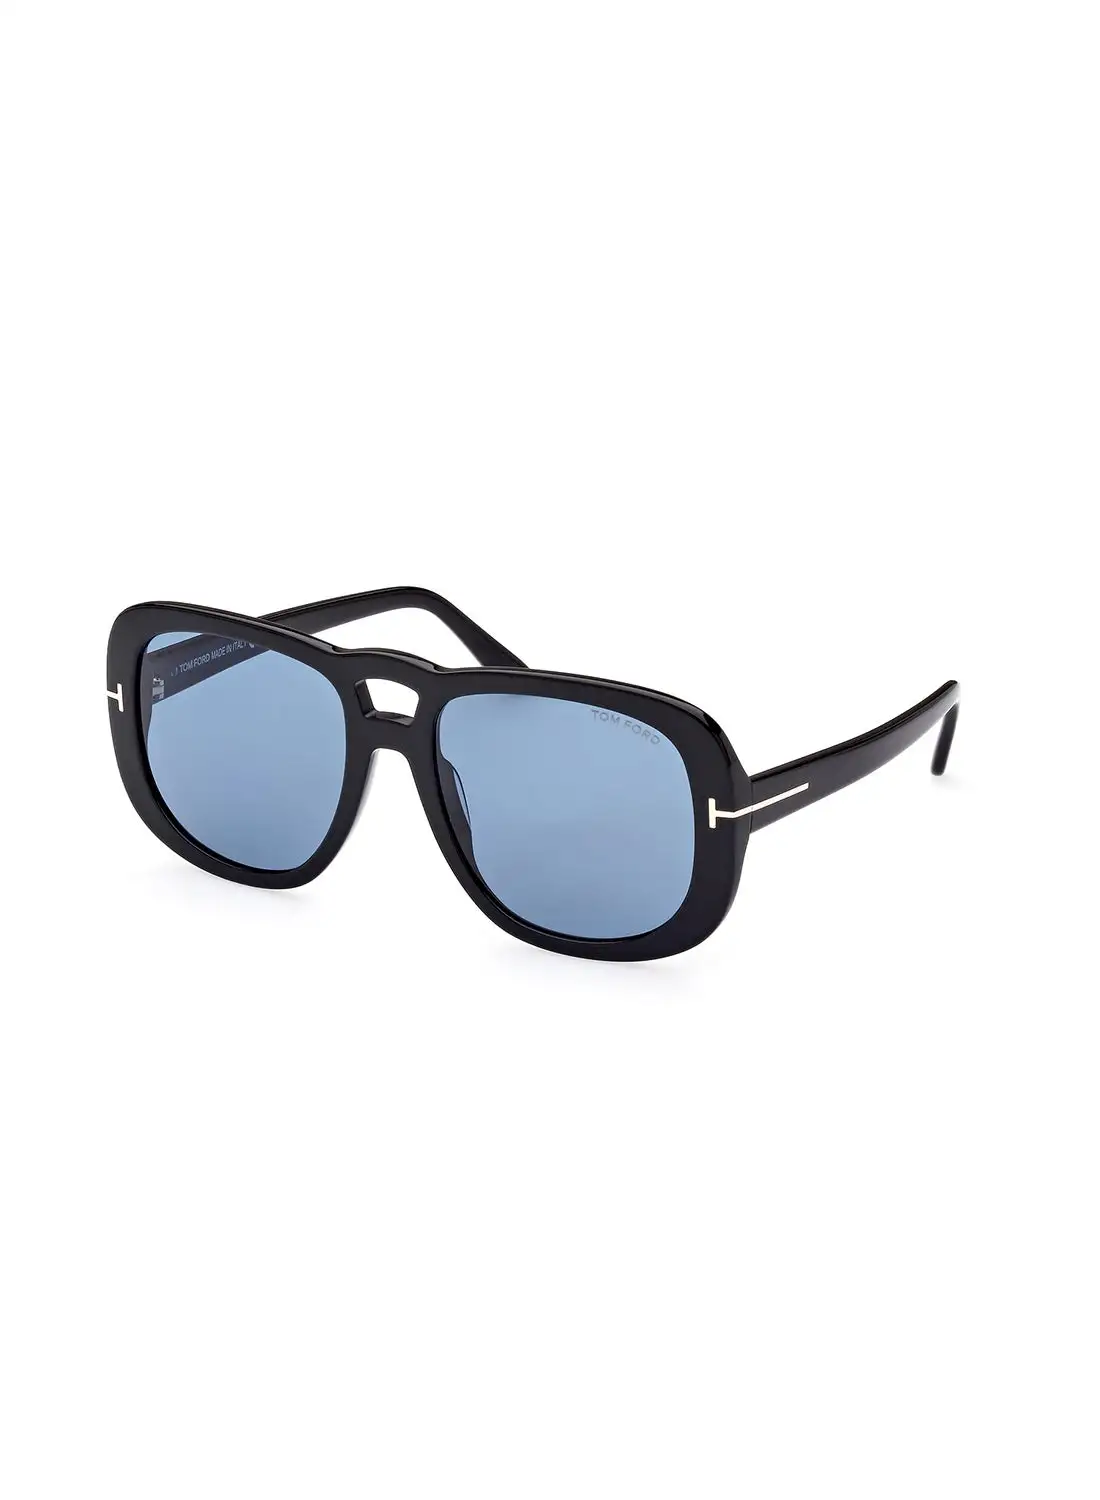 توم فورد نظارة شمسية نافيجيتور للنساء للحماية من الأشعة فوق البنفسجية - FT101201V56 - مقاس العدسة: 56 ملم